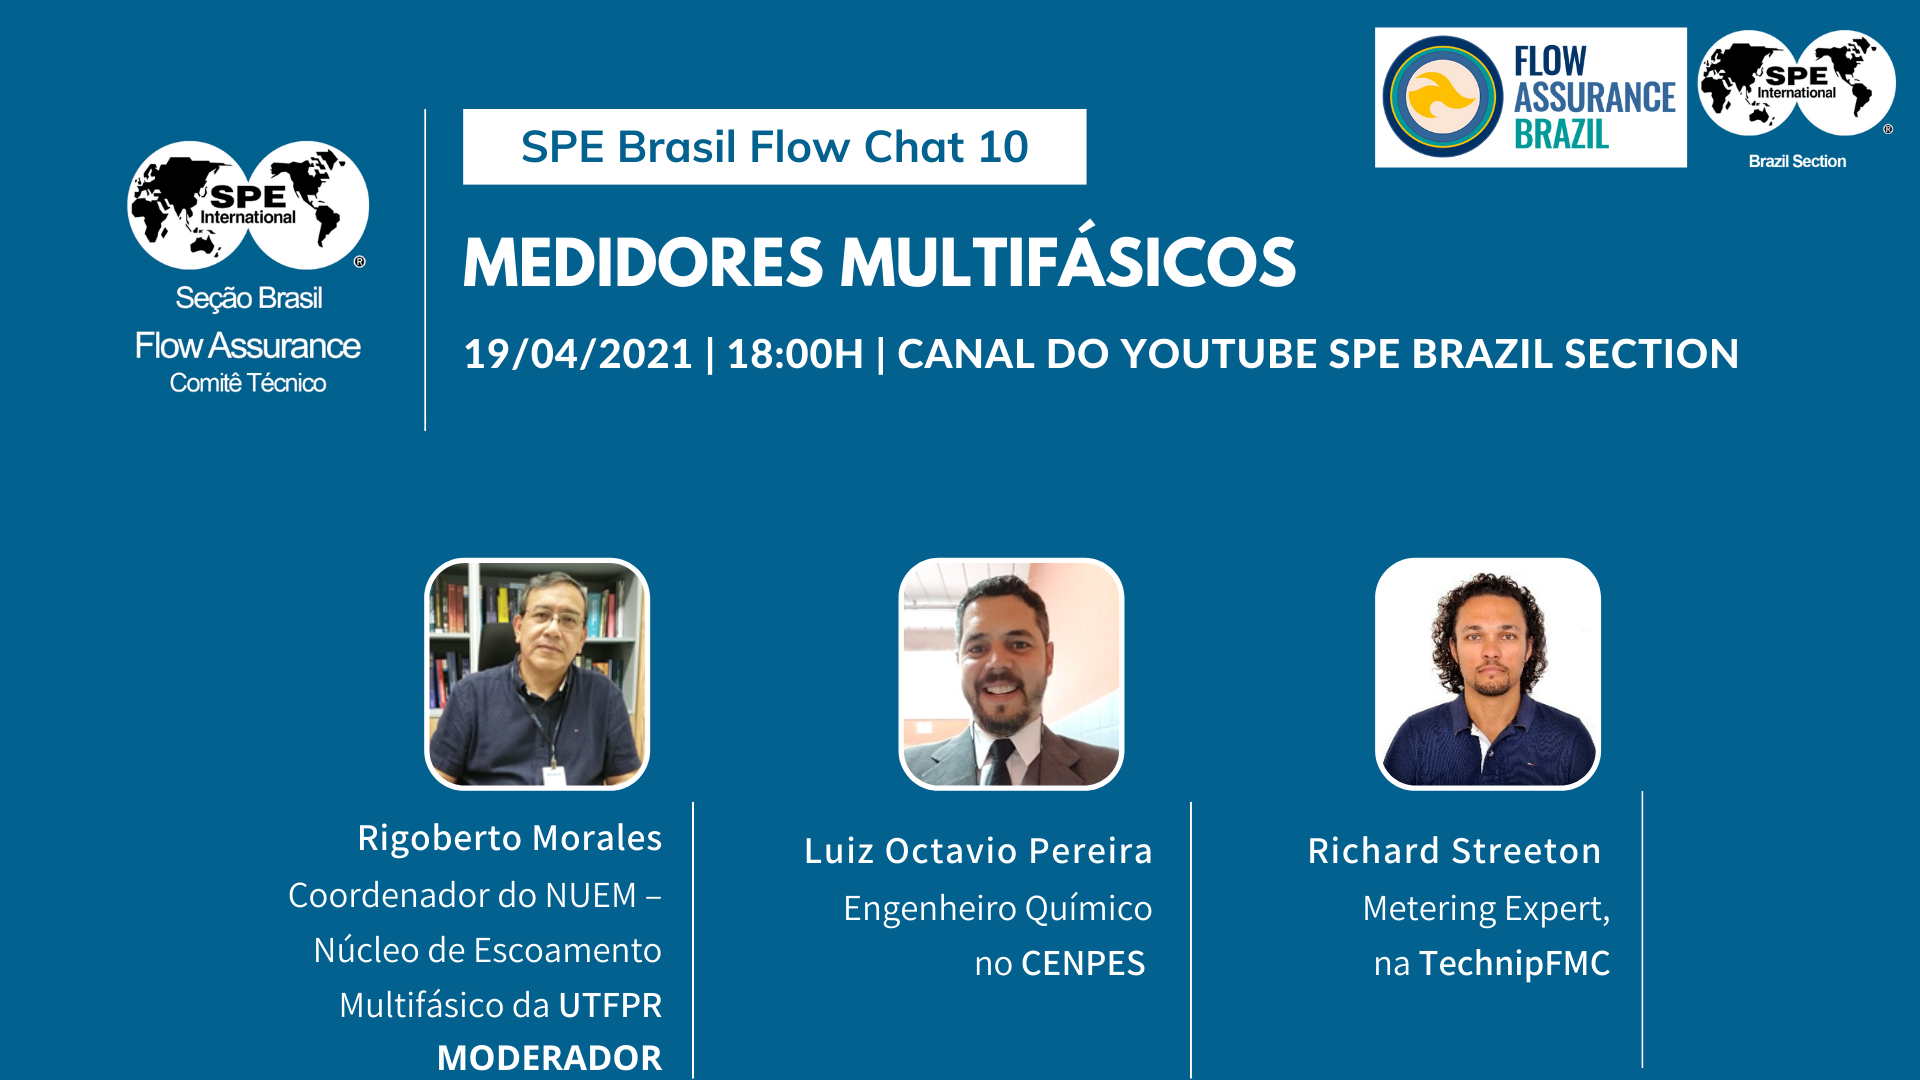 SPE Brasil Flow Chat 10: “Medidores multifásicos”